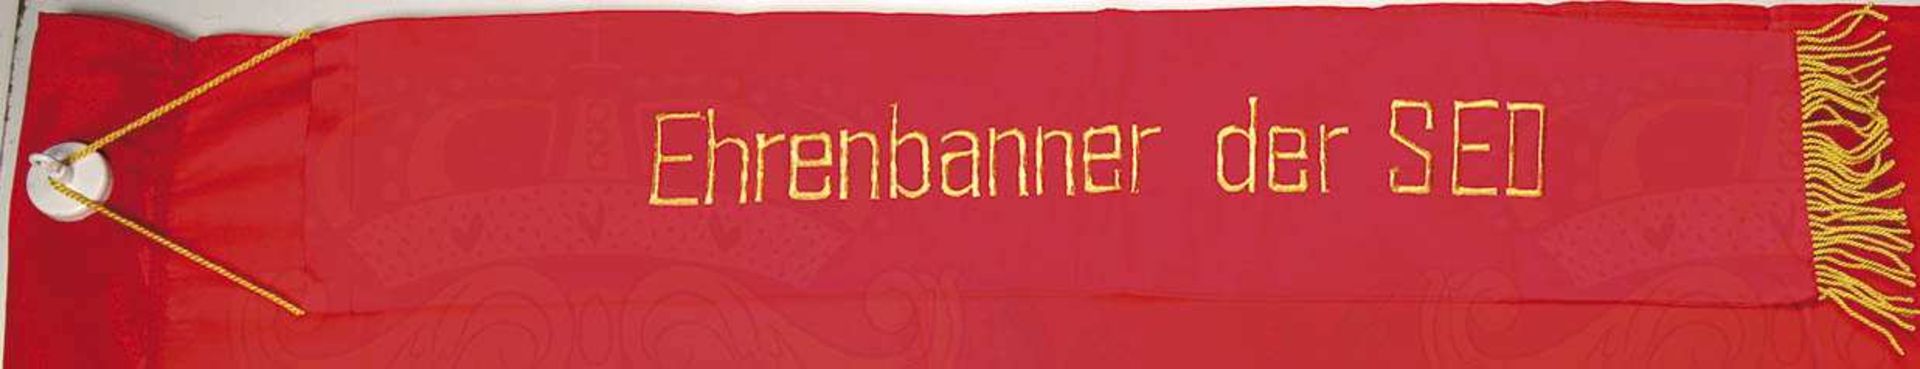 EHRENBANNER, rotes Tuch, bds. vernähte Portraits E. Thälmann u. W. Pieck, Liek mit Durchzug, 158x110 - Bild 3 aus 3